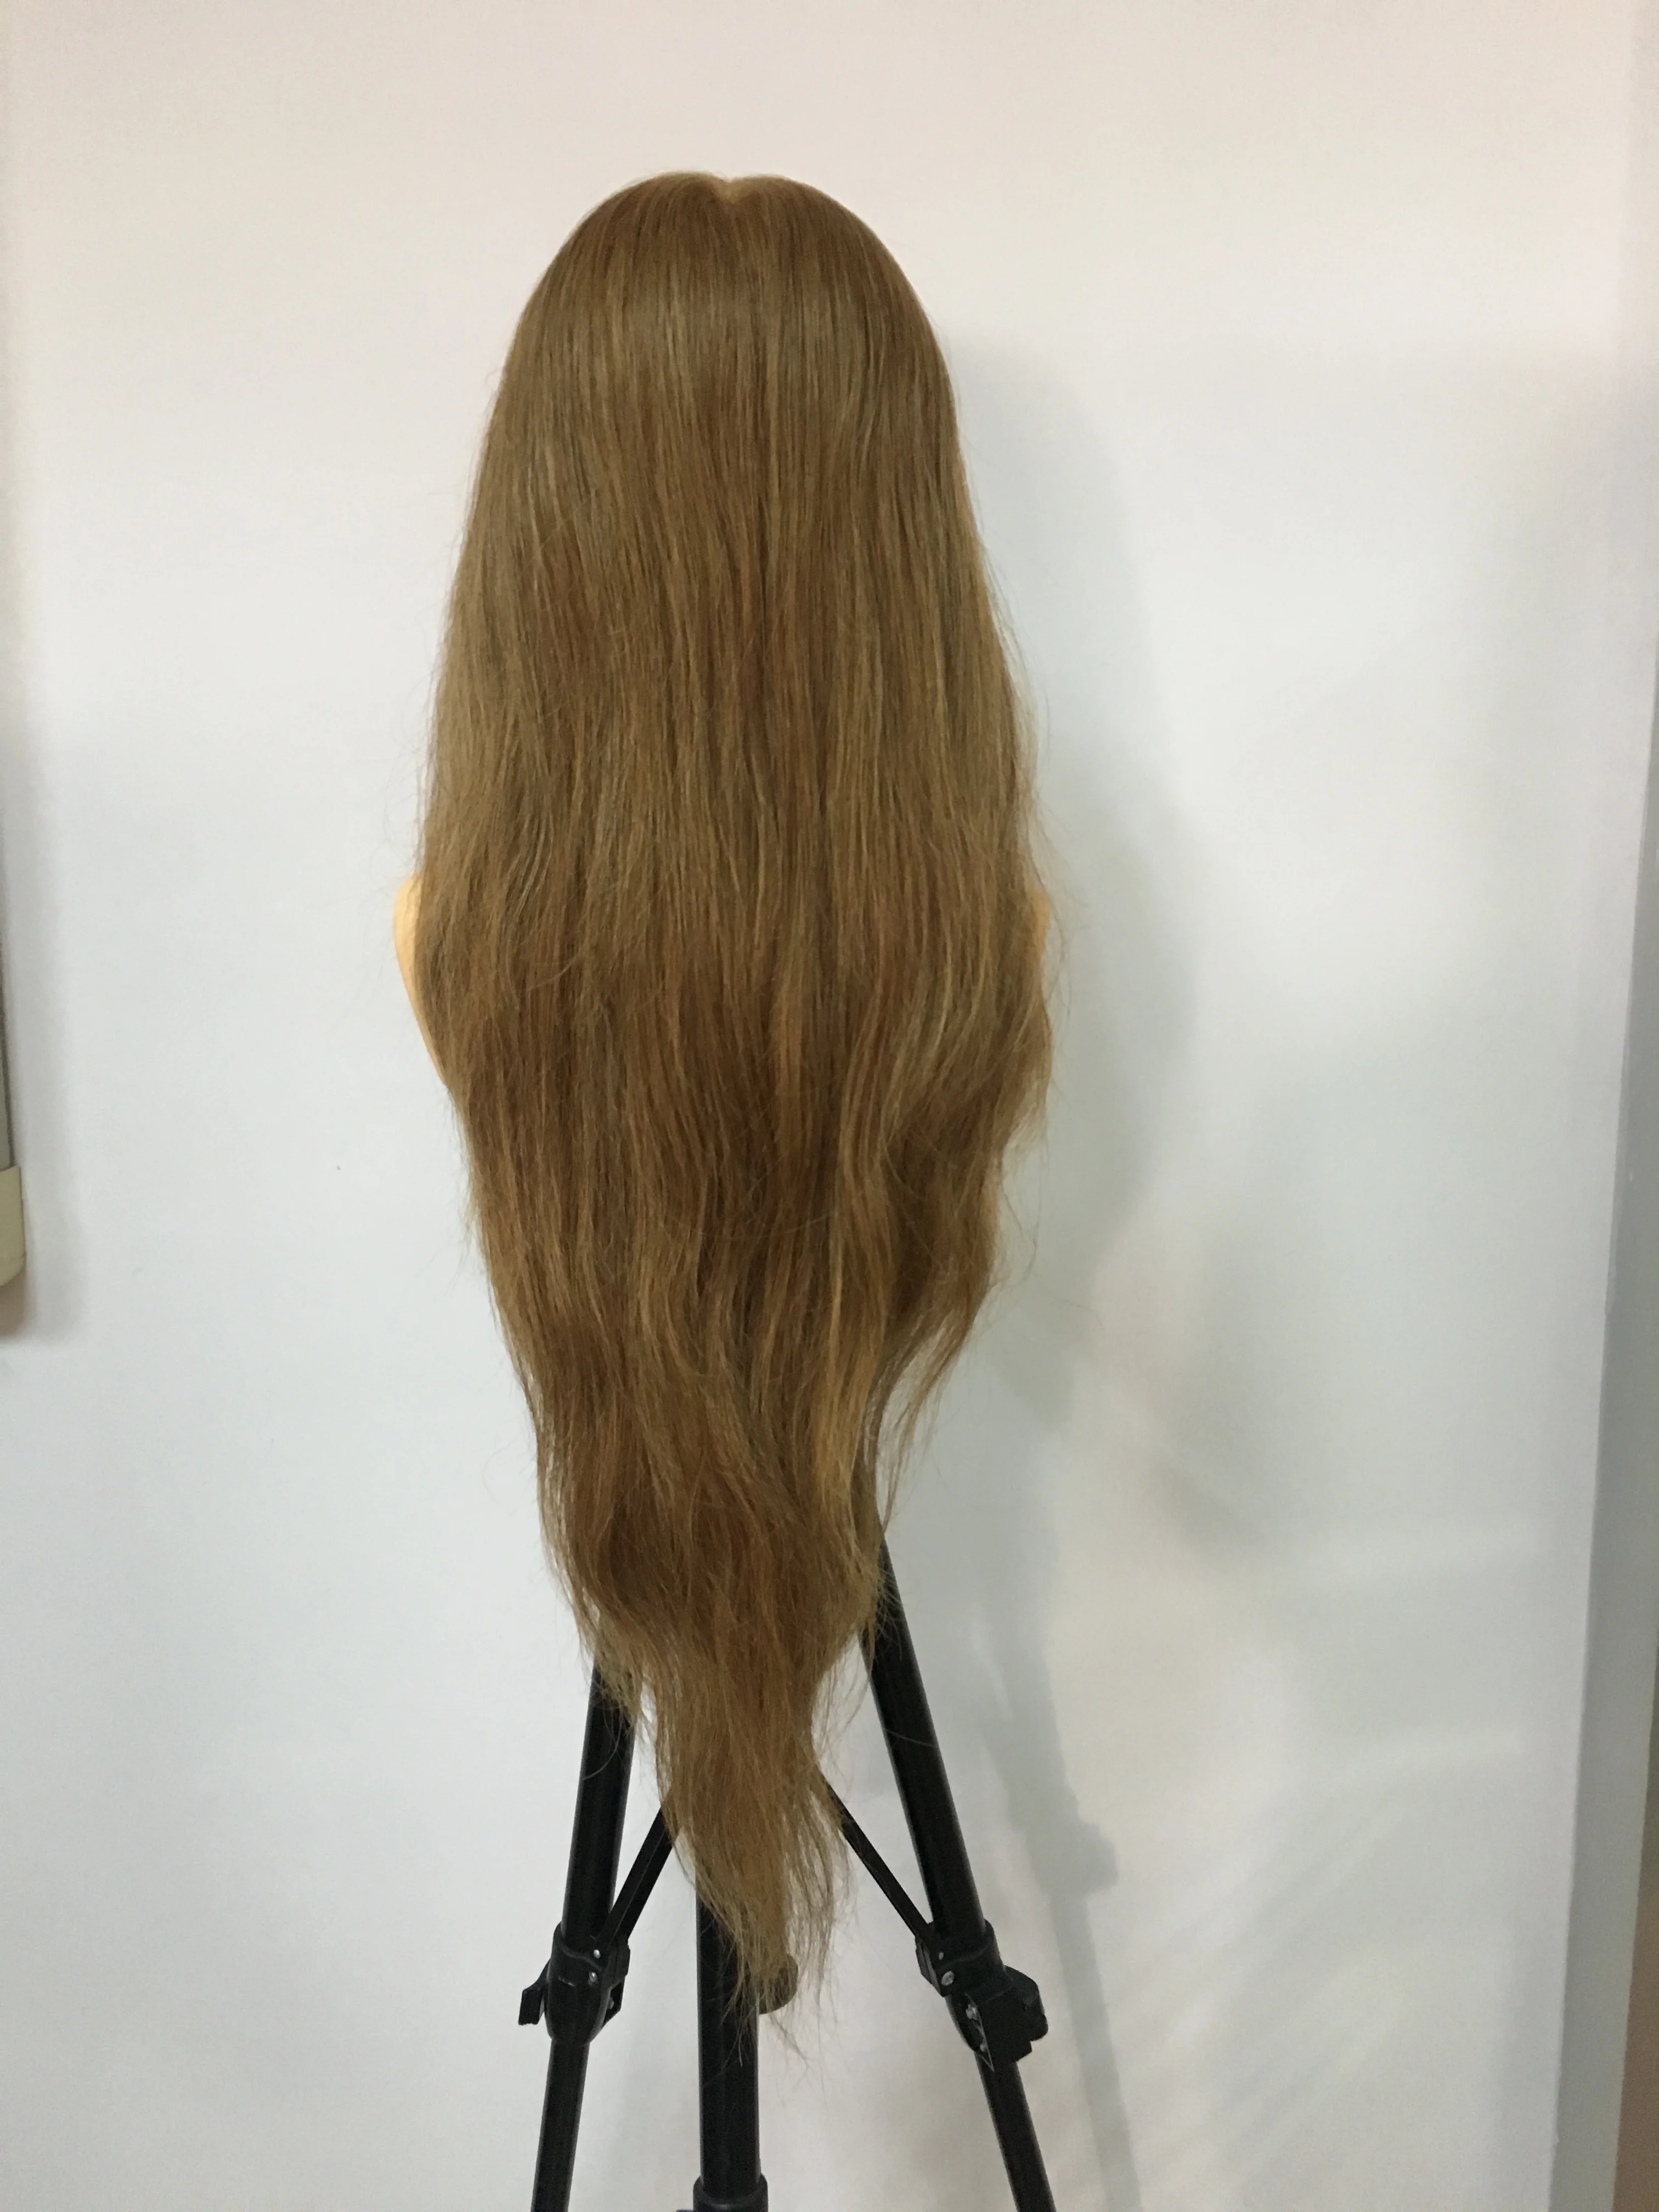 PROHAIR-60 см, 24 дюйма,, светильник для человеческих волос, коричневая голова для соревнований, манекен для парикмахерских, Кукольная голова для парикмахеров